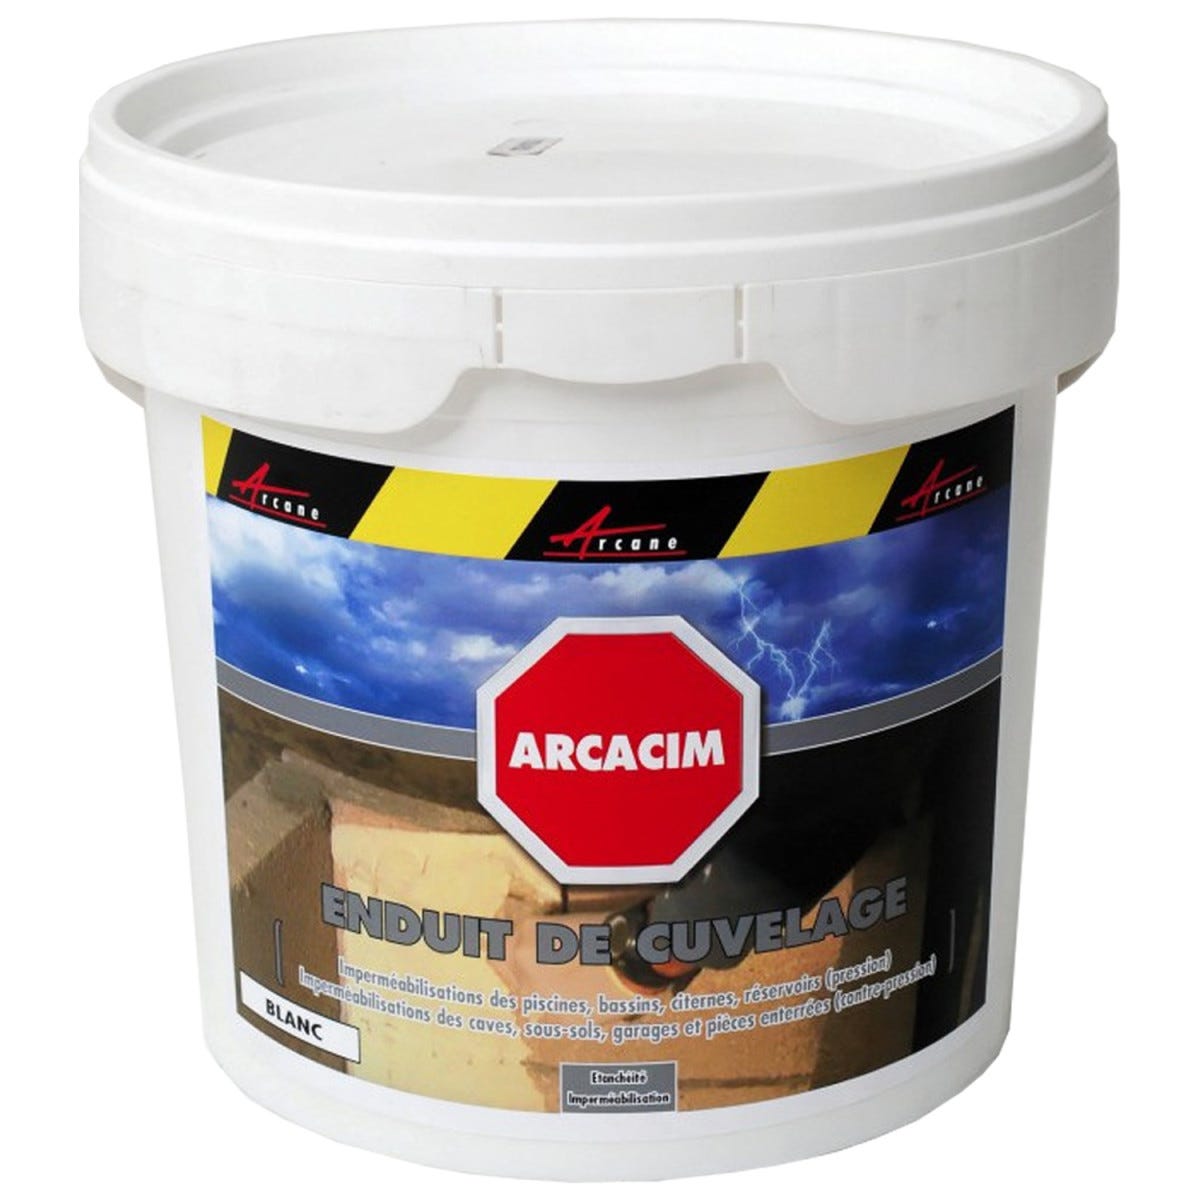 Enduit d'étanchéité hydrofuge pour support maçonné - ARCACIM - Offre Spéciale : 5 x 25 Kg - Blanc - ARCANE INDUSTRIES 2